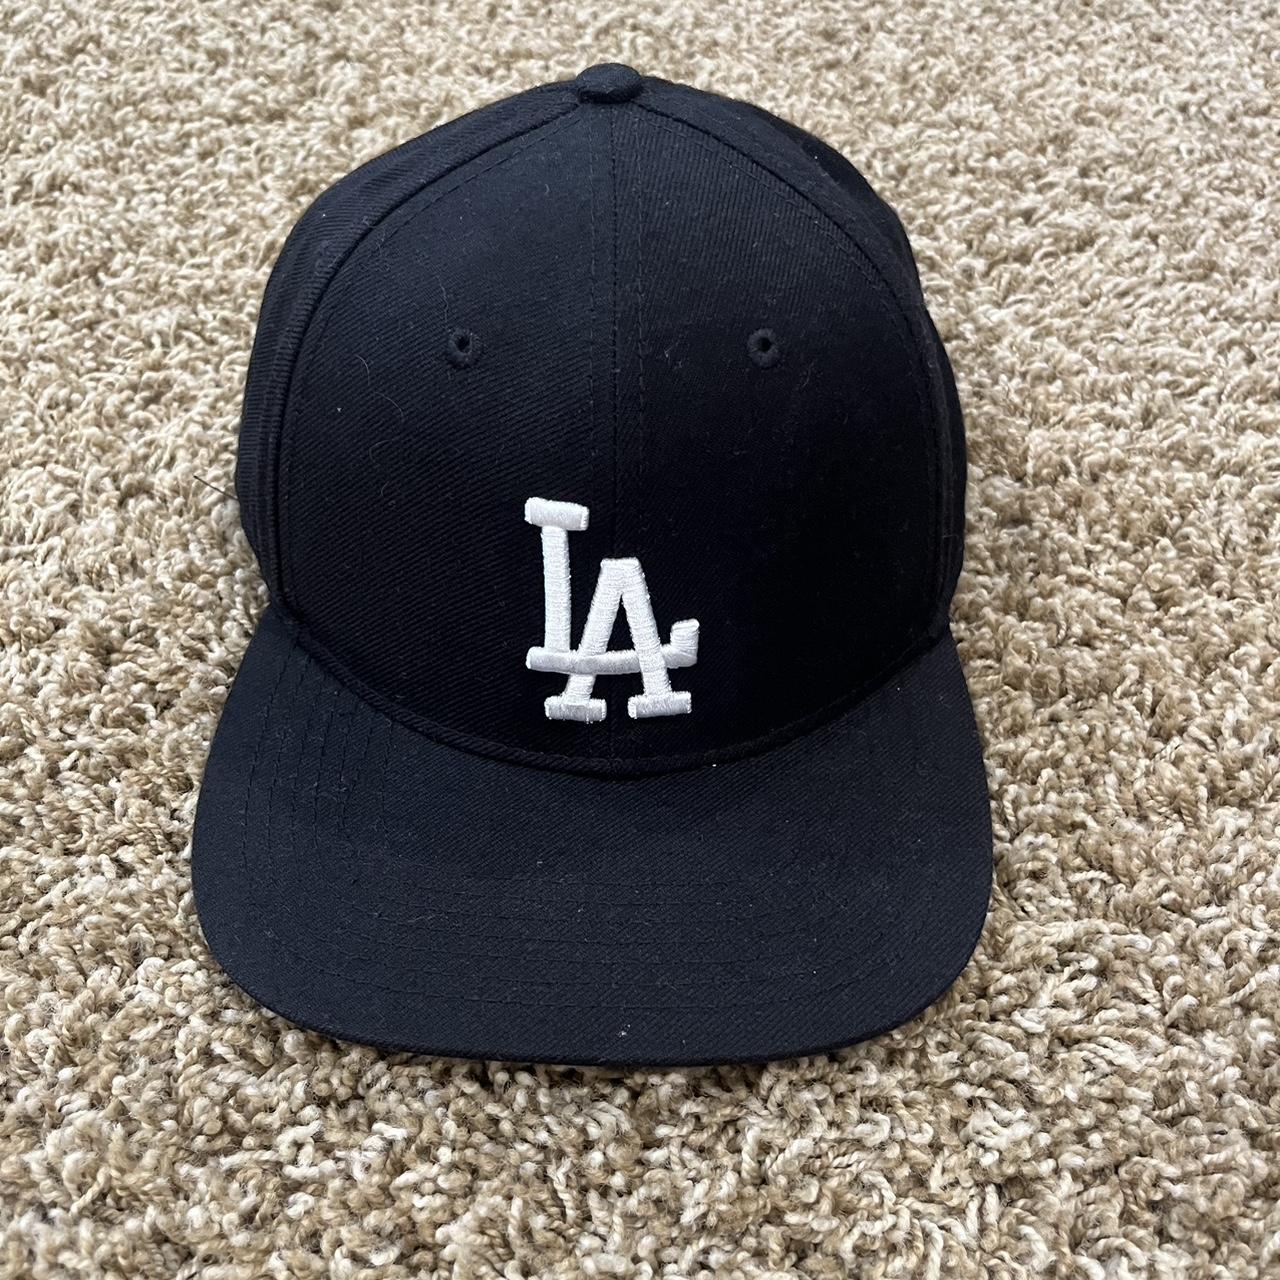 LA Dodgers Hat - Black - ‘47 Brand - Fitted - Depop